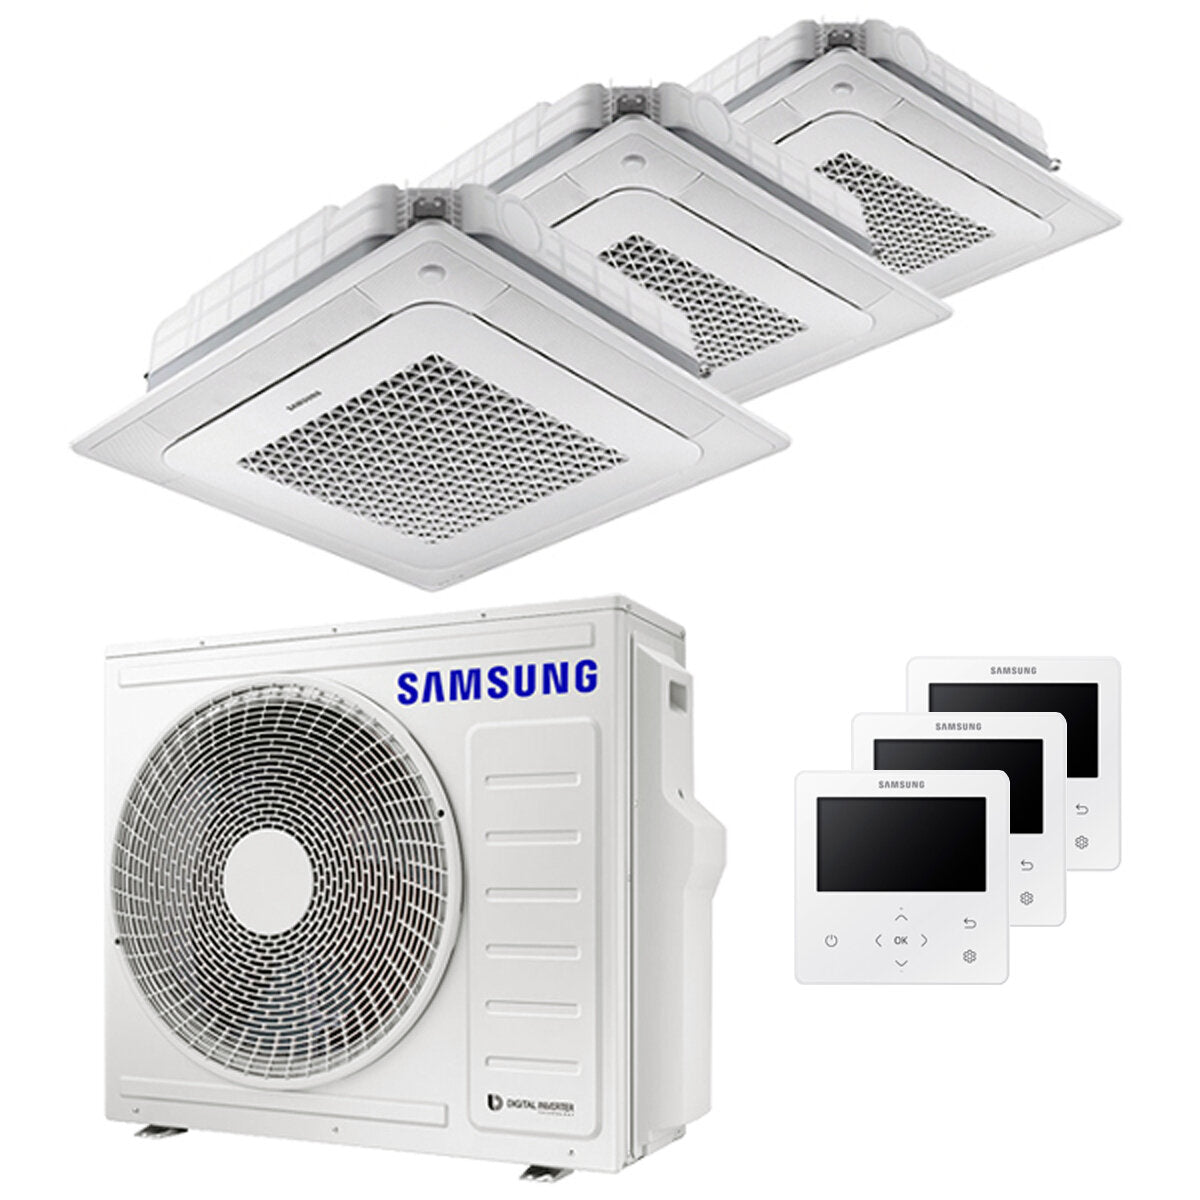 Samsung Klimaanlage Windfree 4-Wege Trial Split 7000 + 9000 + 12000 BTU Inverter A++ Außengerät 6,8 kW